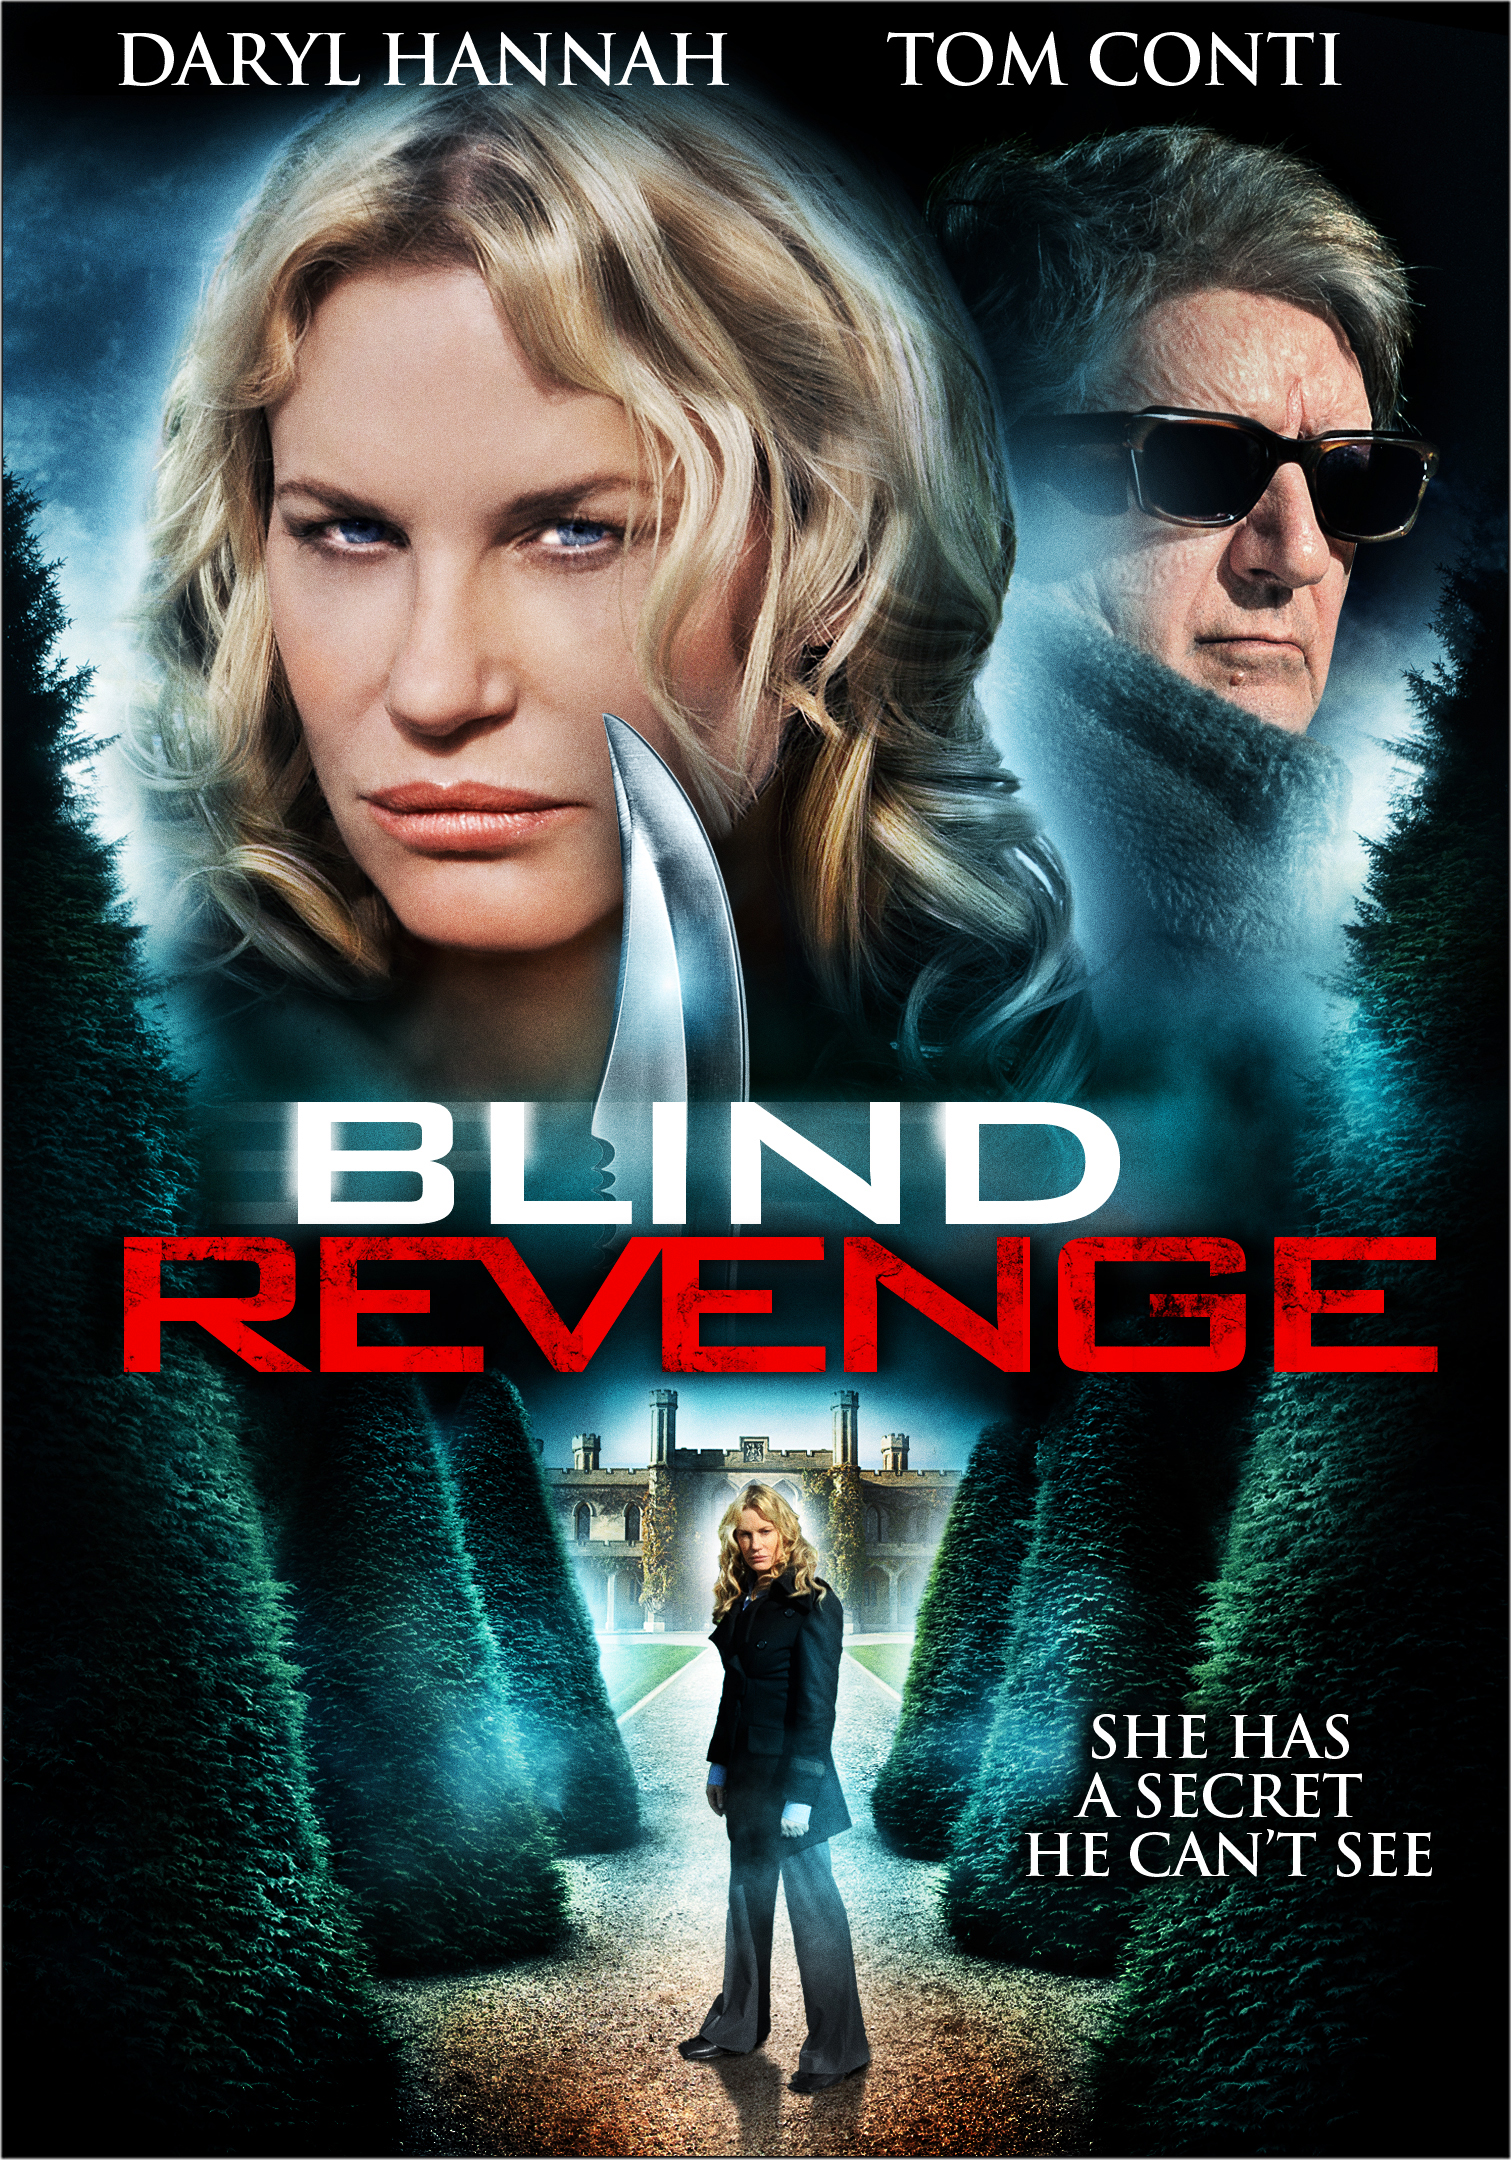 Blind Revenge (2009) starring Tom Conti on DVD on DVD